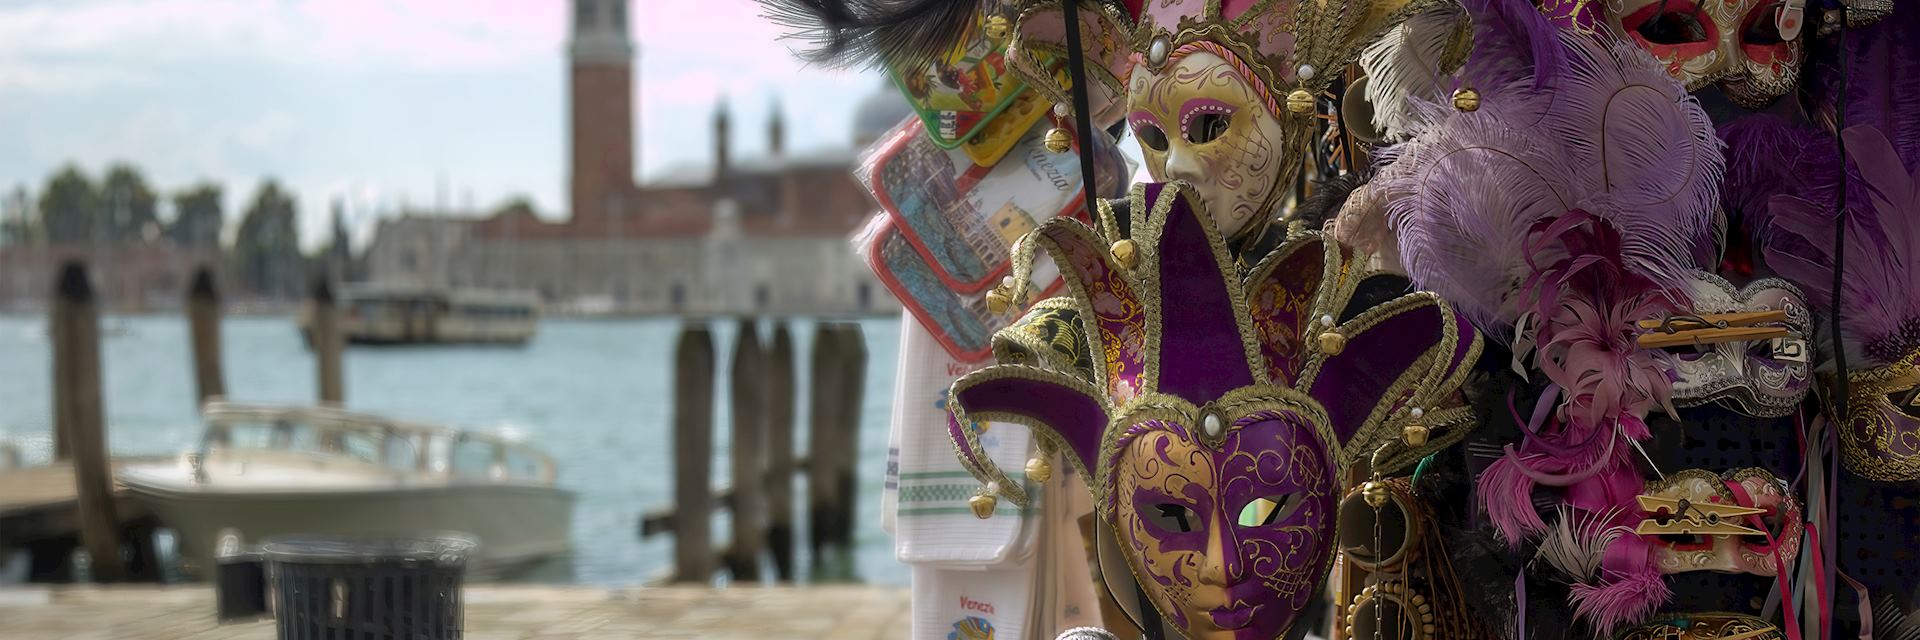 Masks, Venice